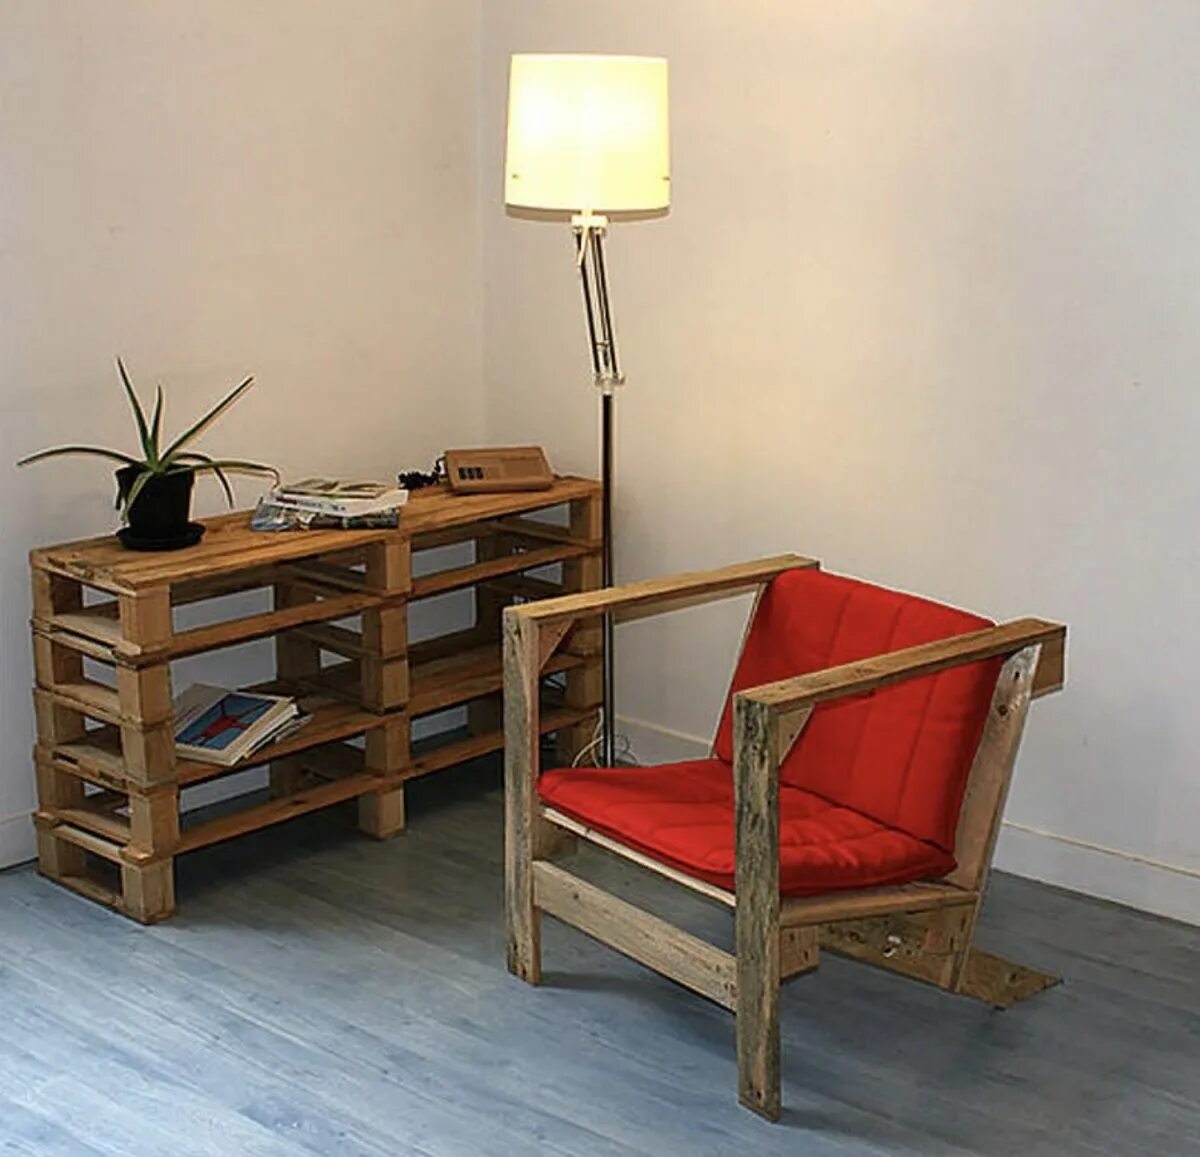 Мебель из поддонов для дома. Мебель из поддонов. Кресло из поддонов. Мебель из деревянных поддонов. Мебель из паллет кресло.